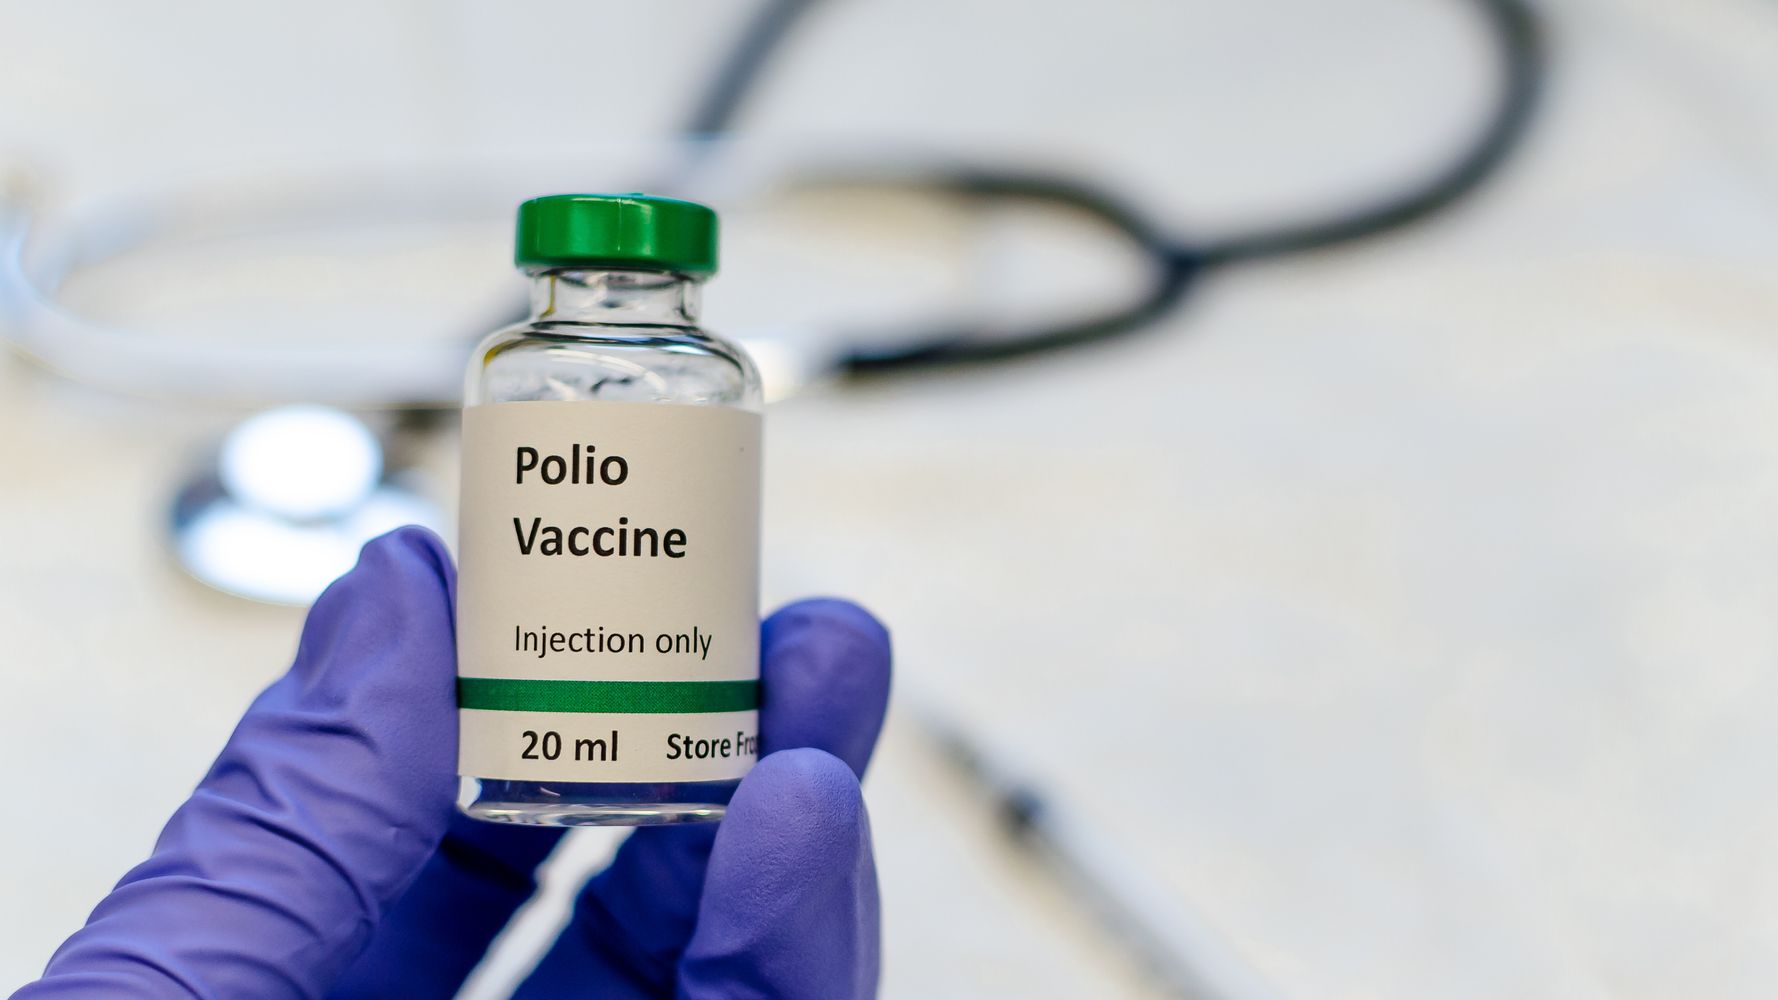 Ανιχνεύθηκε ο ιός της πολιομυελίτιδας στα λύματα – Τι μπορεί να σημαίνει αυτό;